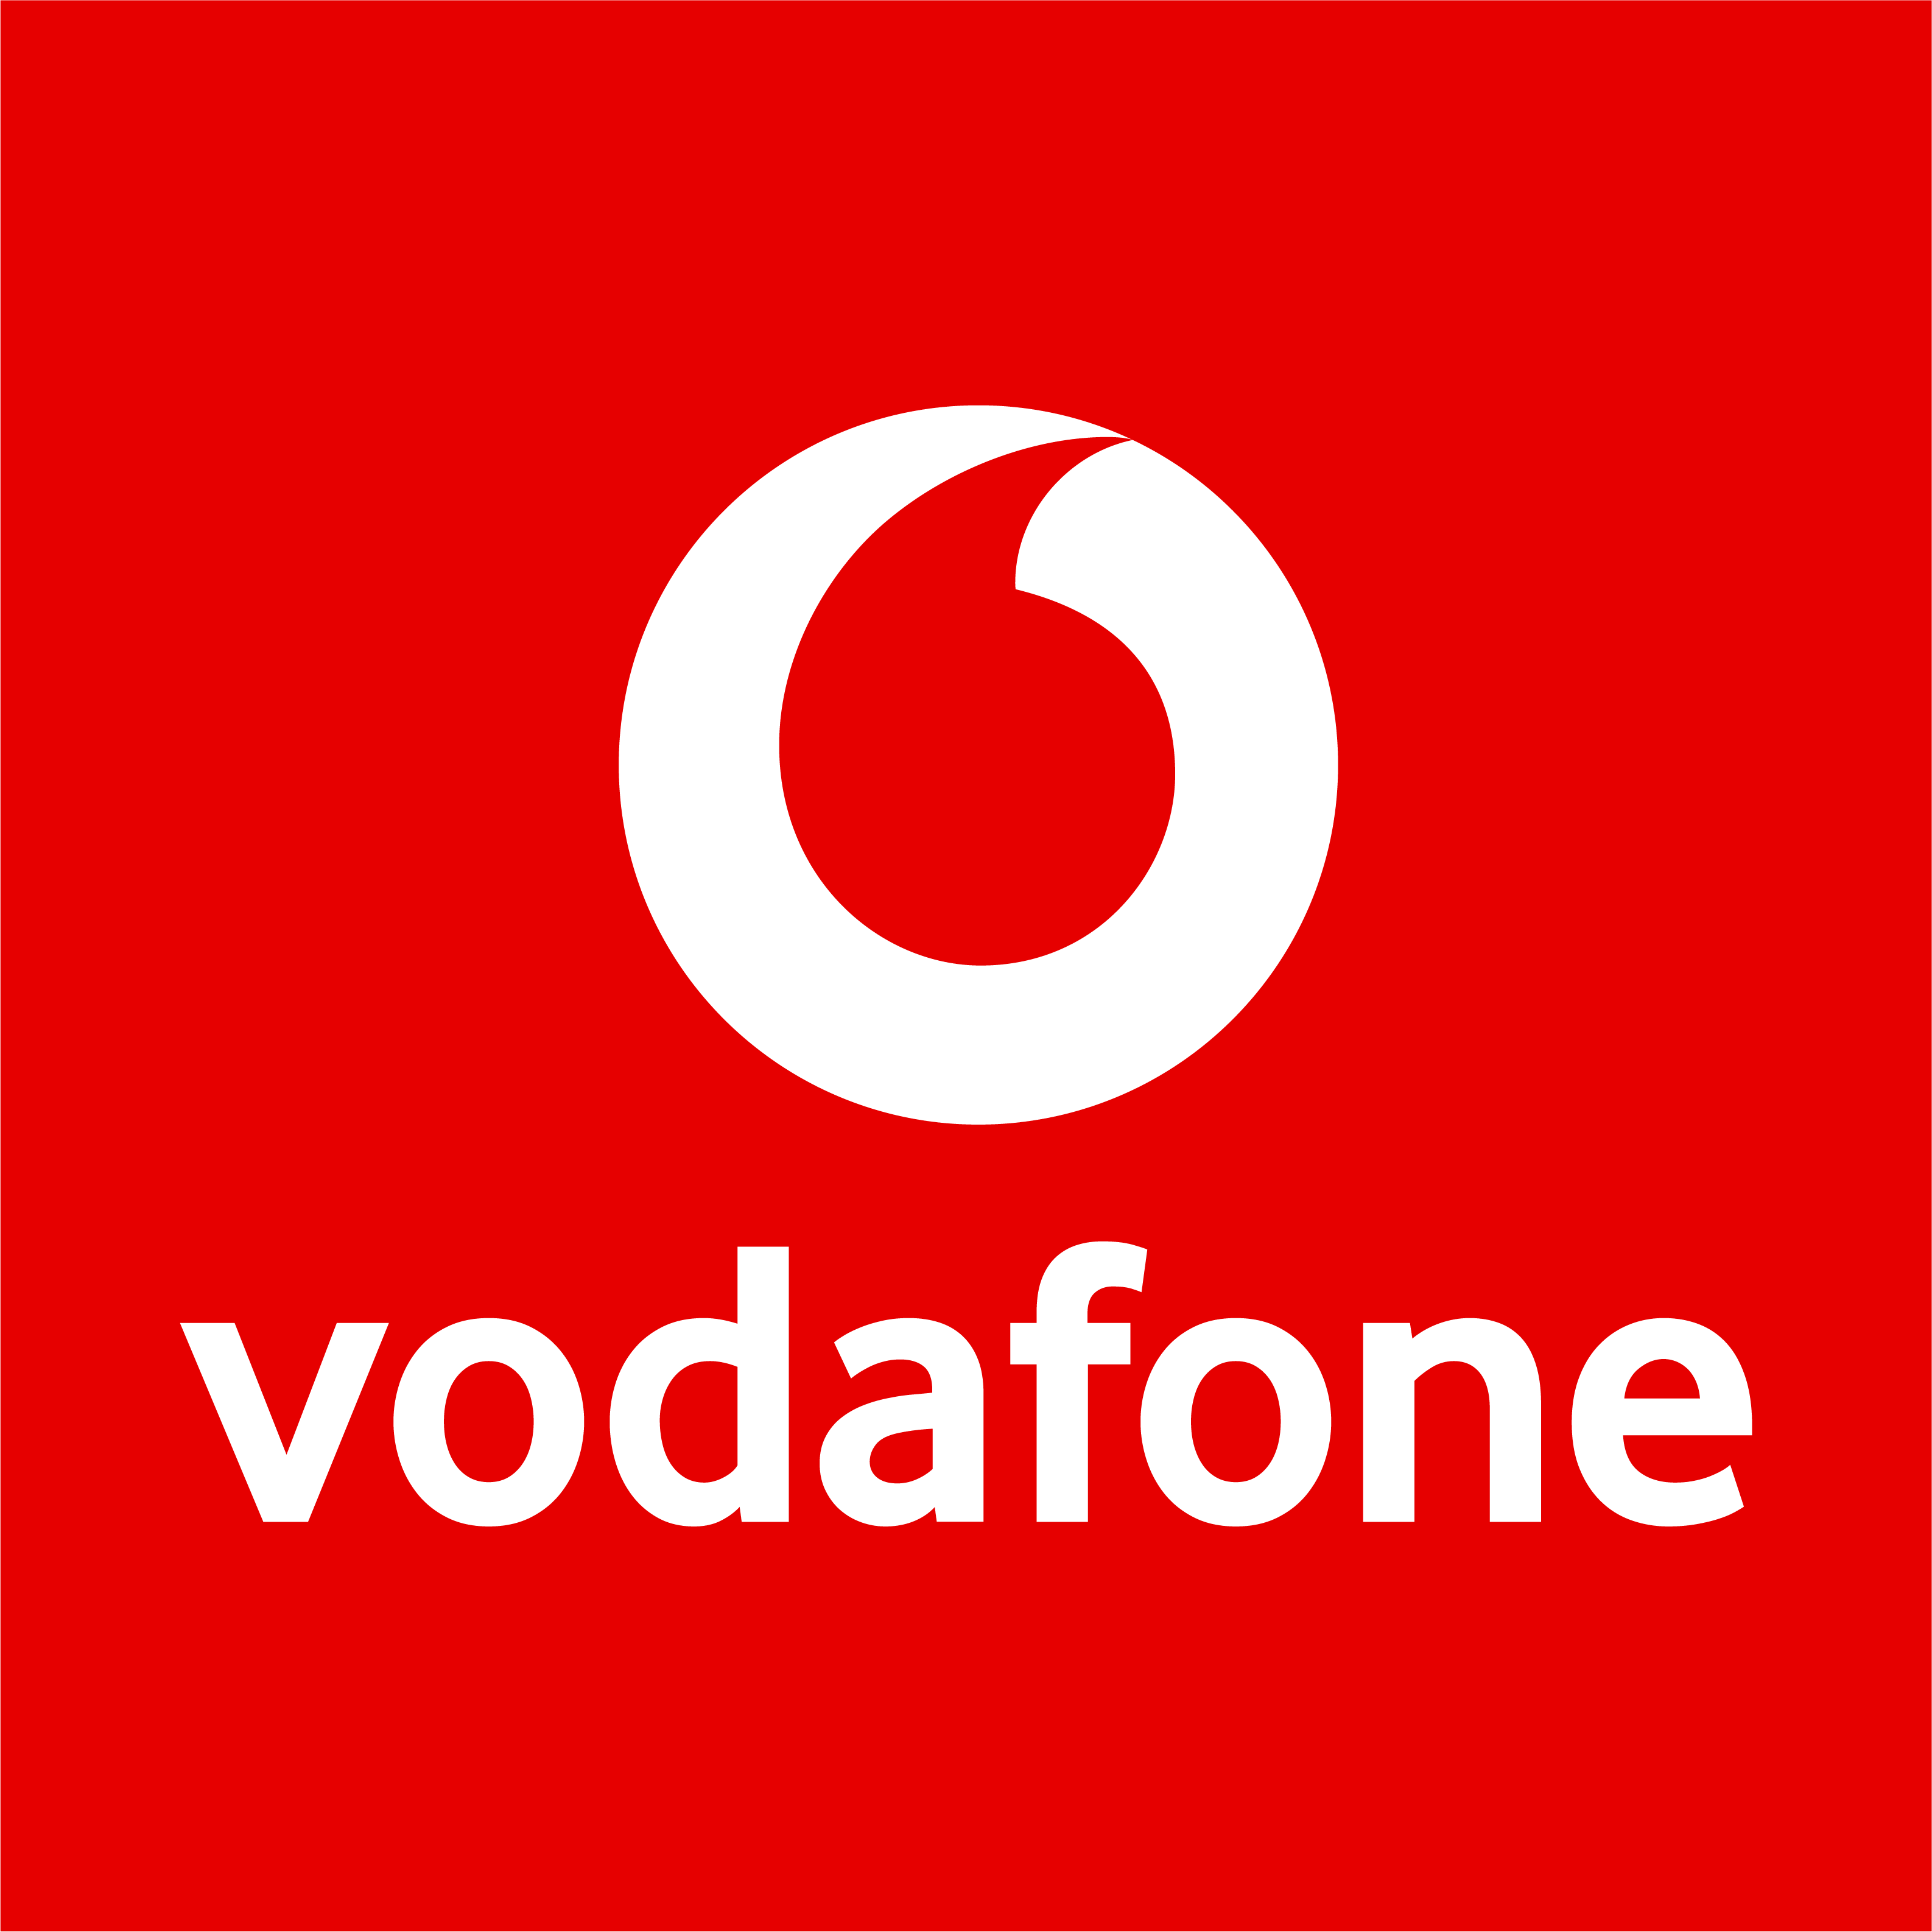 Vodafone Shop in Köln - Logo